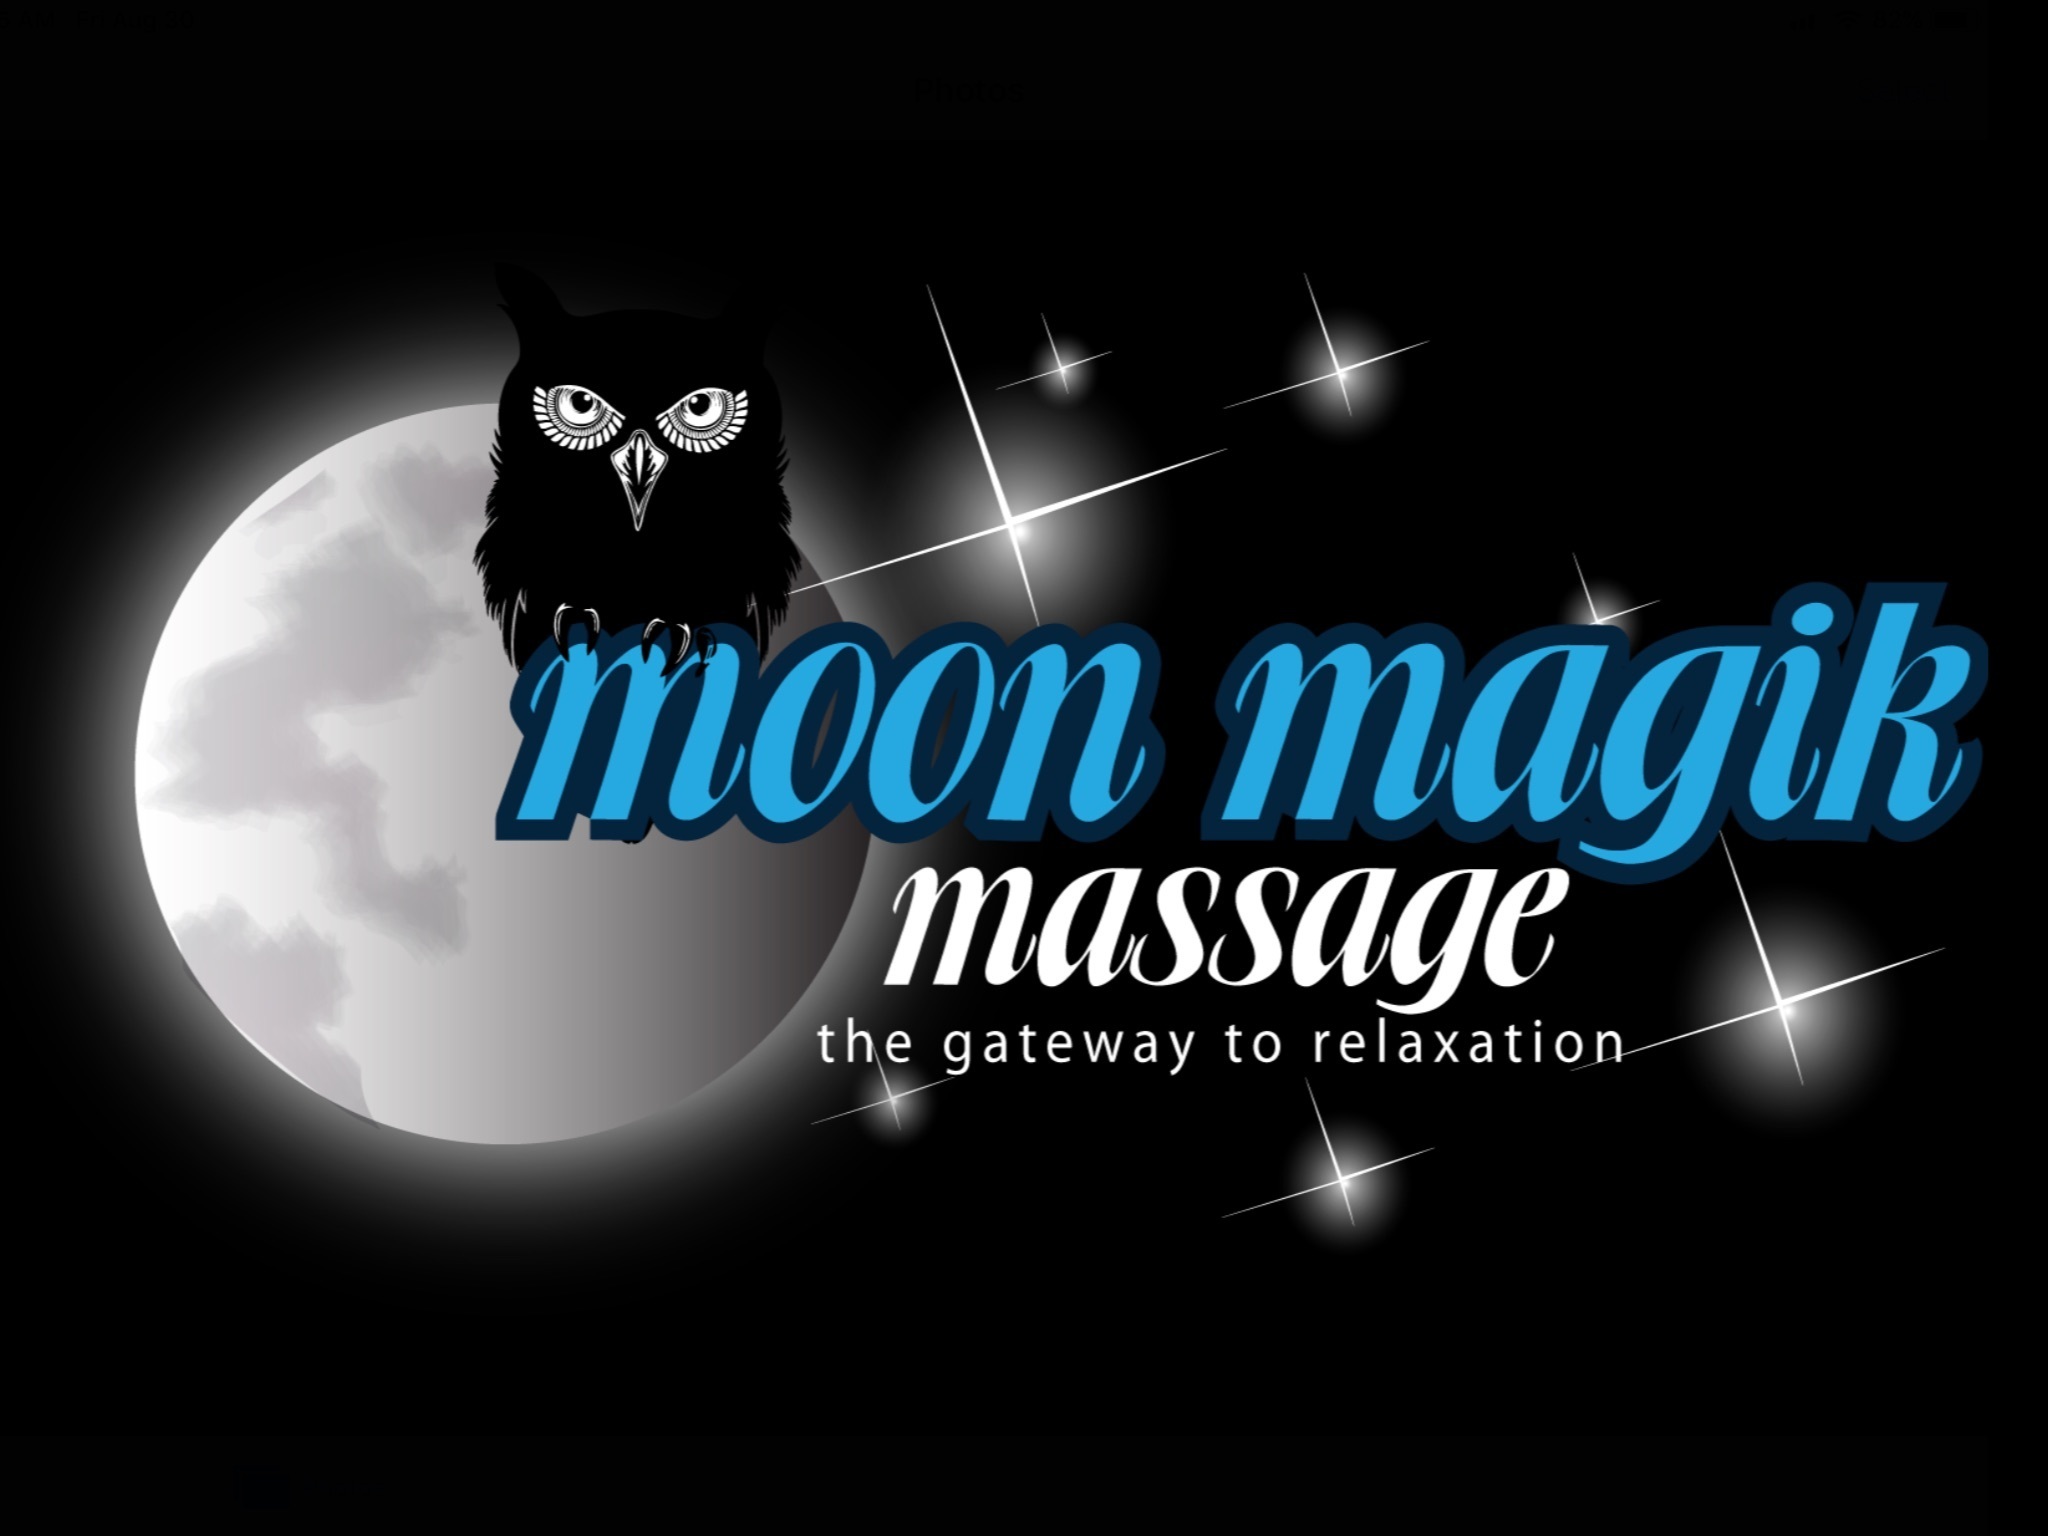 Moon magik massage